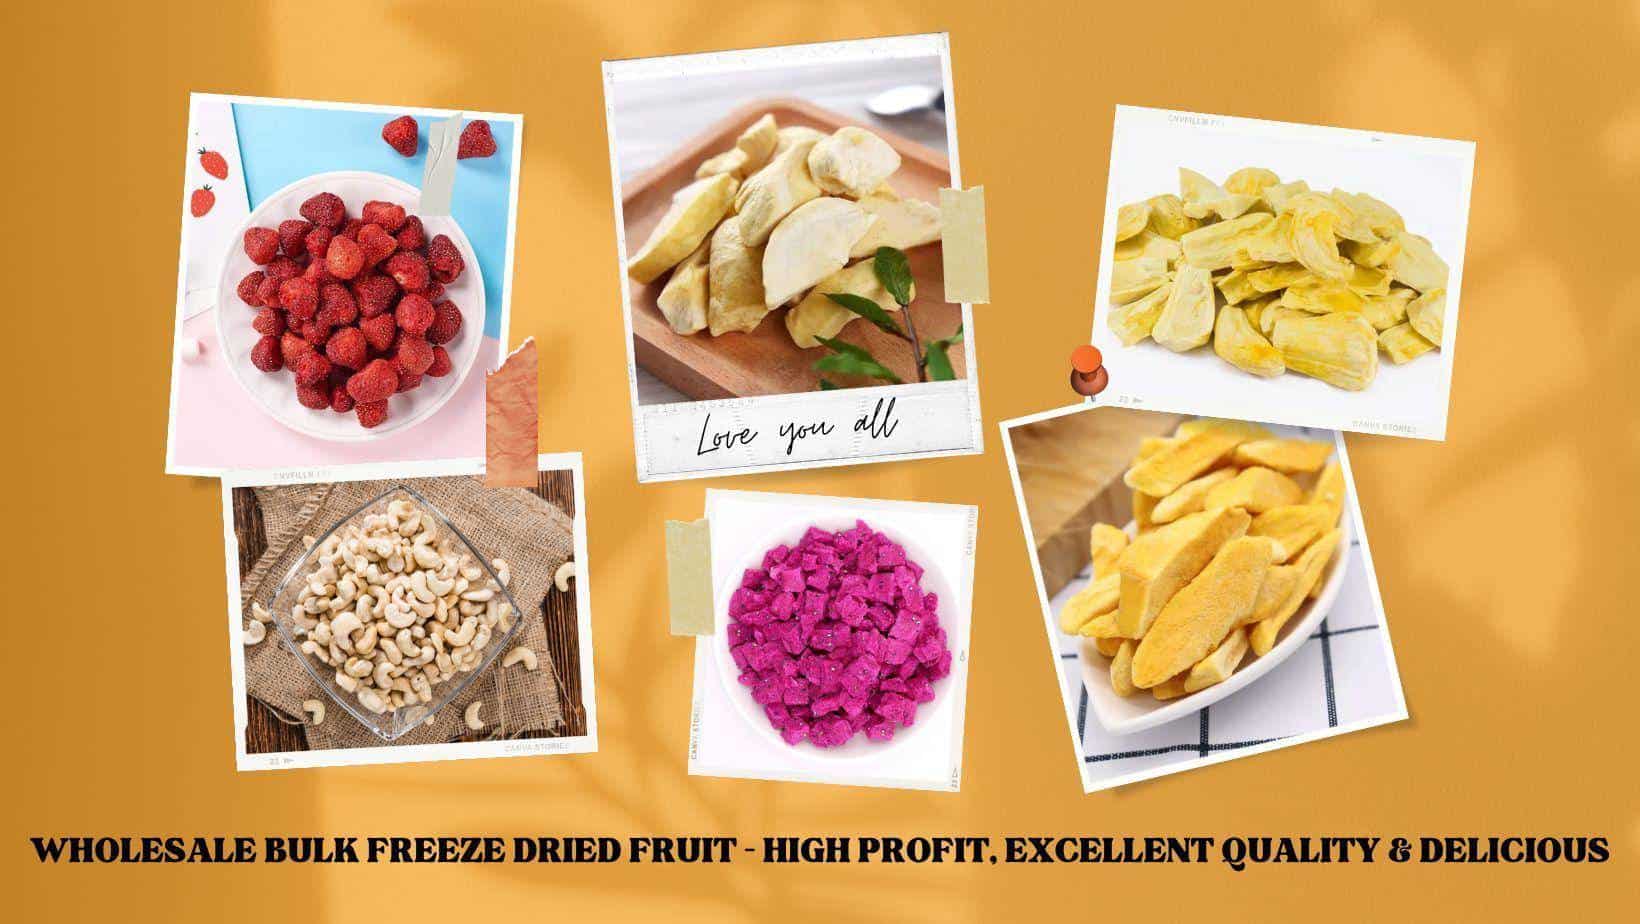 FruitBuys Vietnam  Wholesale Bulk Freeze Dried Fruit – High Profit, Excellent Quality & Delicious